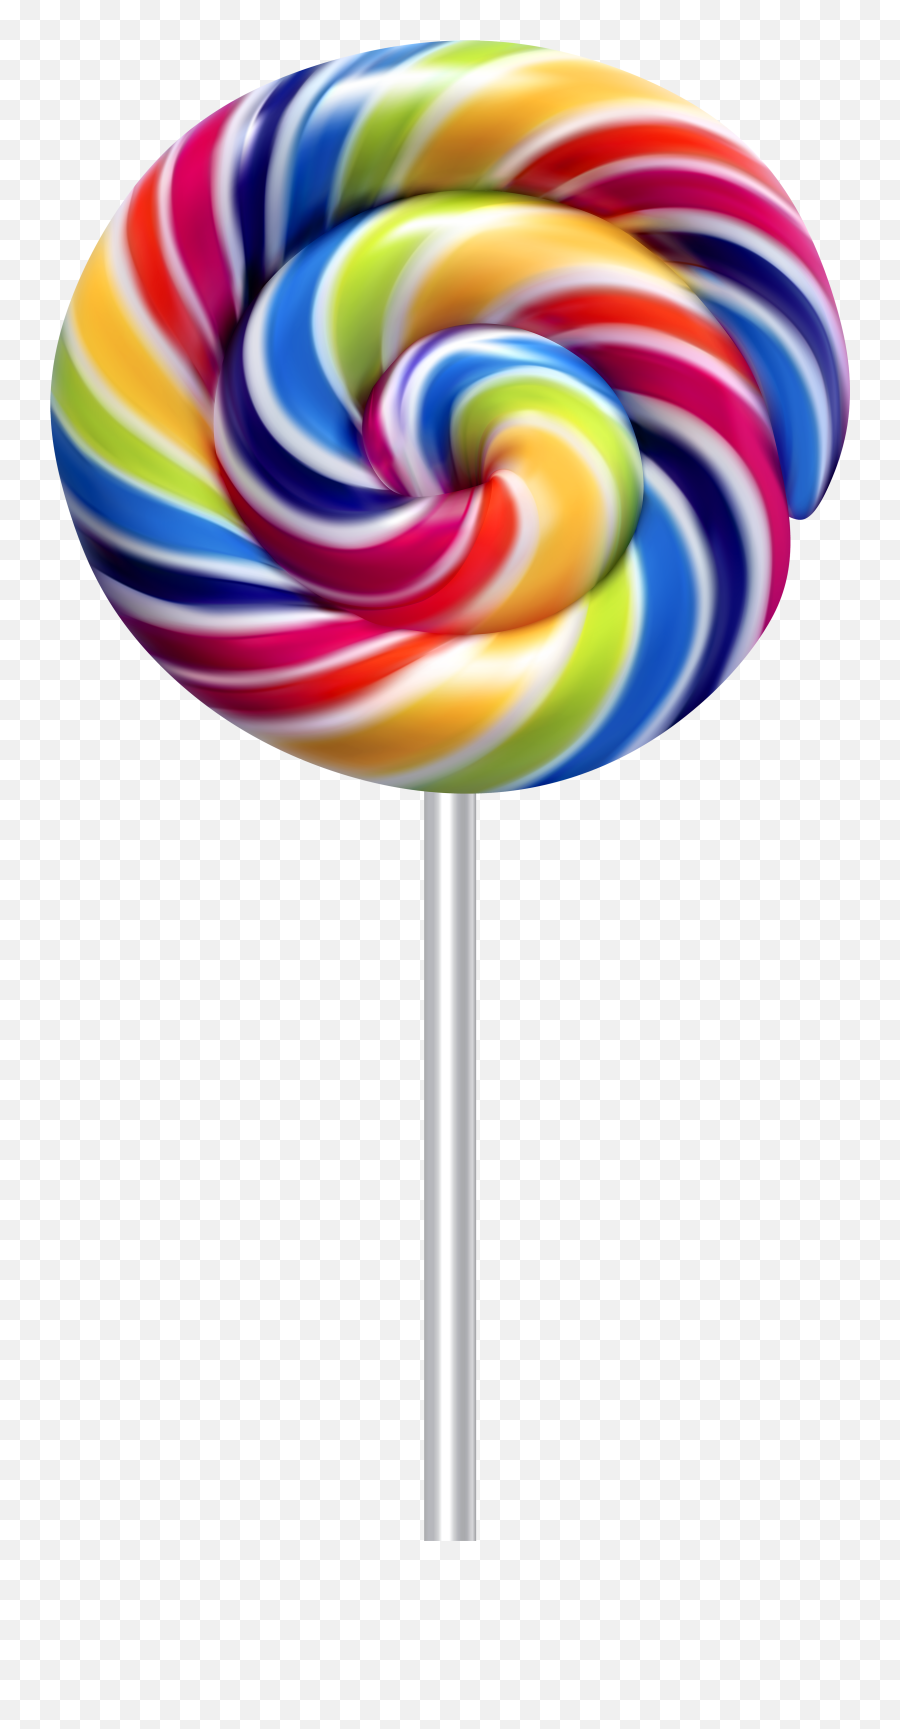 Rainbow Lollipop Png Transparent Image - Lollipop Candy Transparent Background Emoji,Lollipop Png